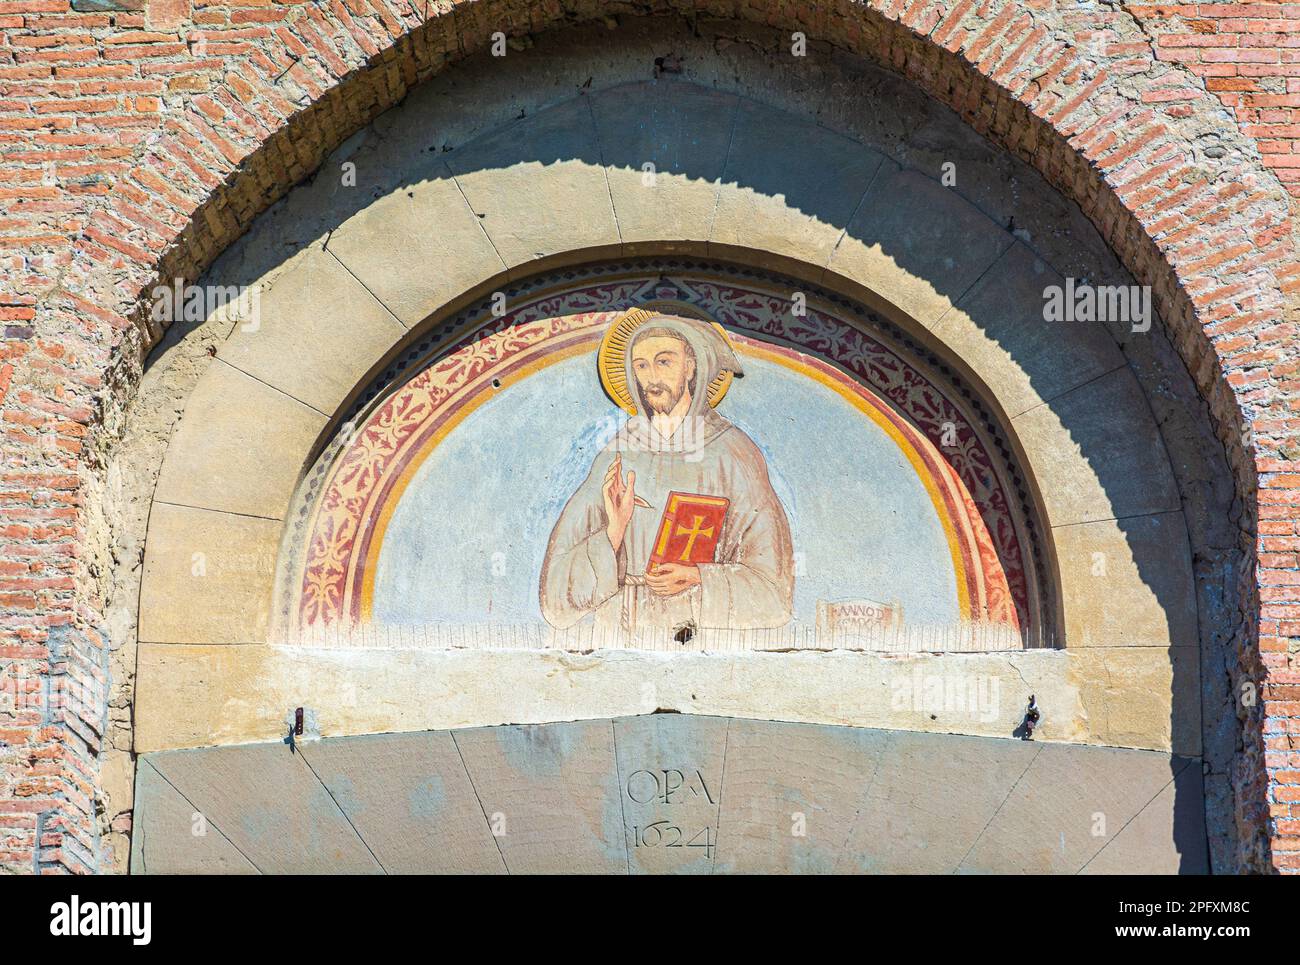 Facciata a mosaico della chiesa di San Francesco a San Miniato, provincia di Pisa, regione Toscana, Italia - originariamente costruita agli inizi del '13th Foto Stock